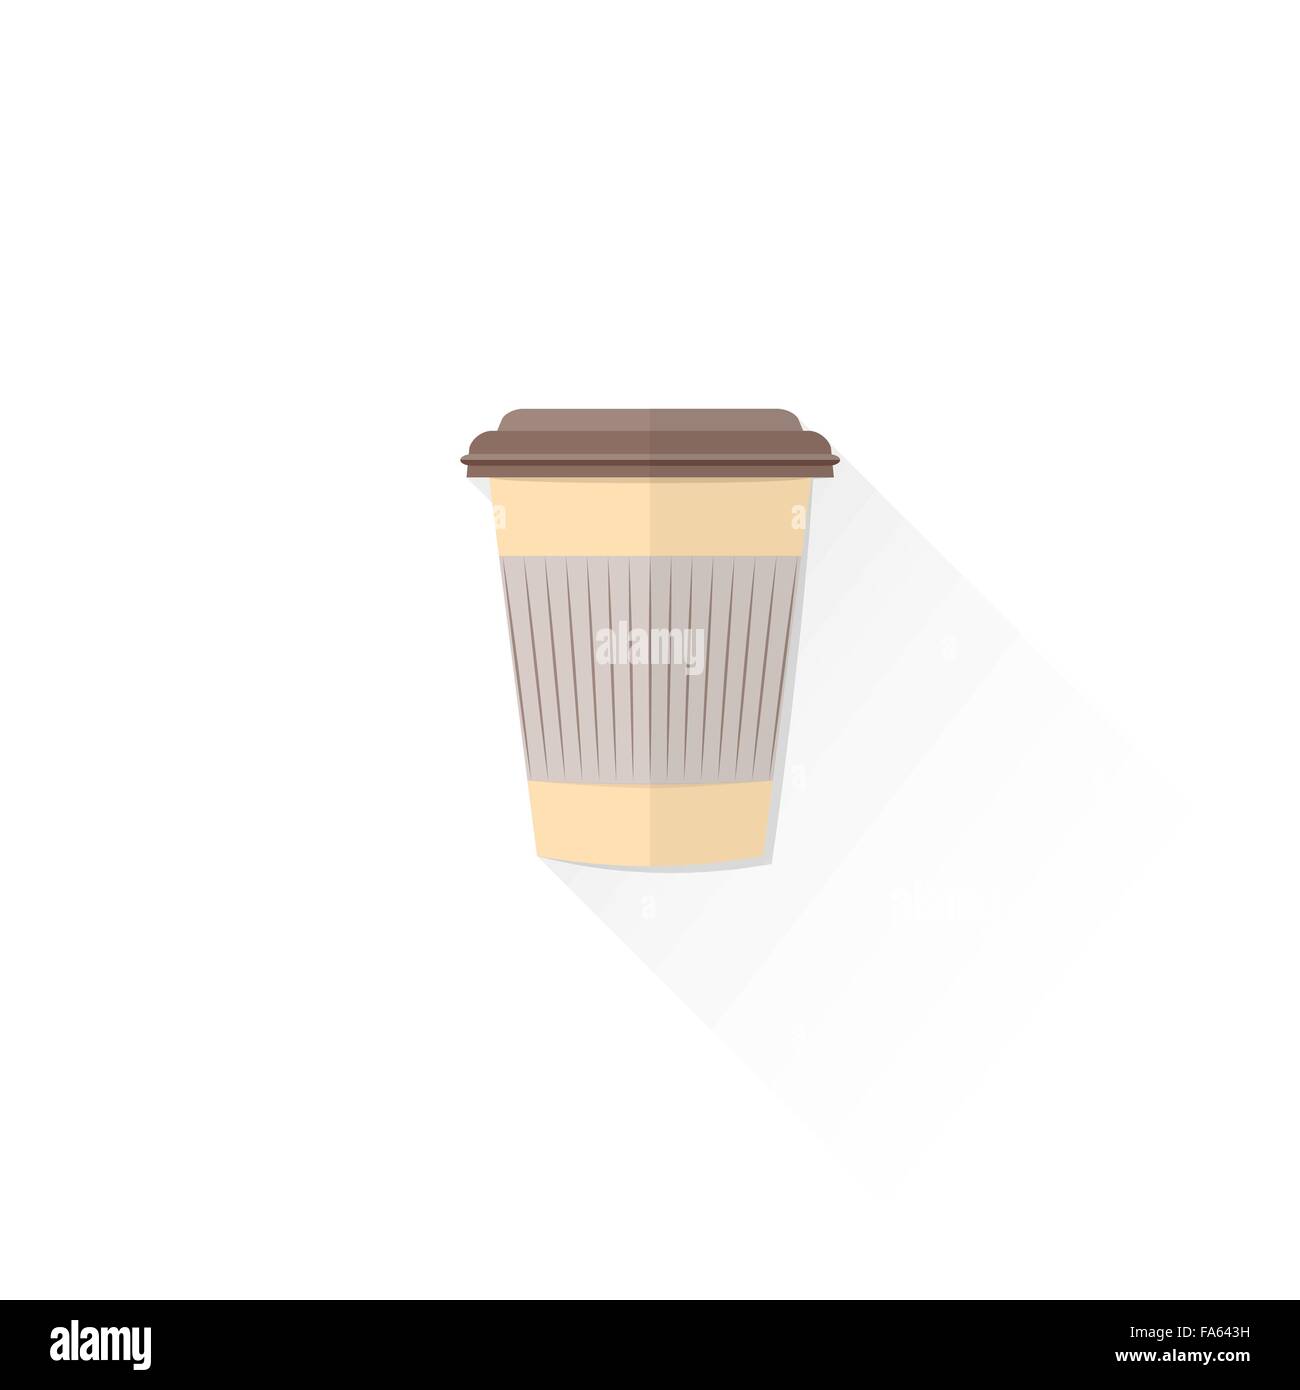 Vettore di colore beige carta tazza da caffè con cappuccio design piatto illustrazione isolato su sfondo bianco con ombra Illustrazione Vettoriale